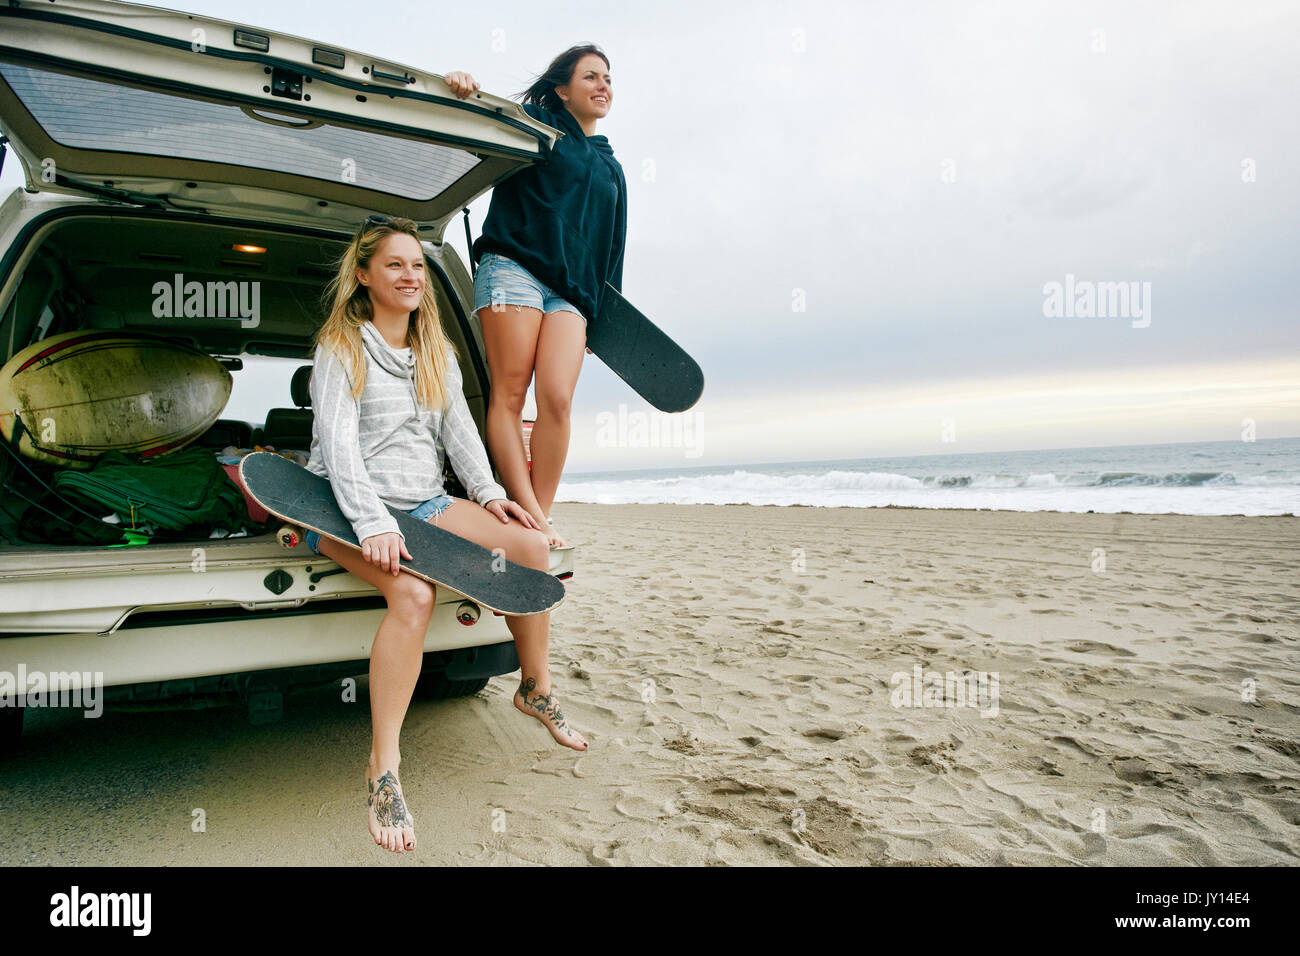 Les femmes de race blanche en voiture éclosent à beach holding skateboards Banque D'Images